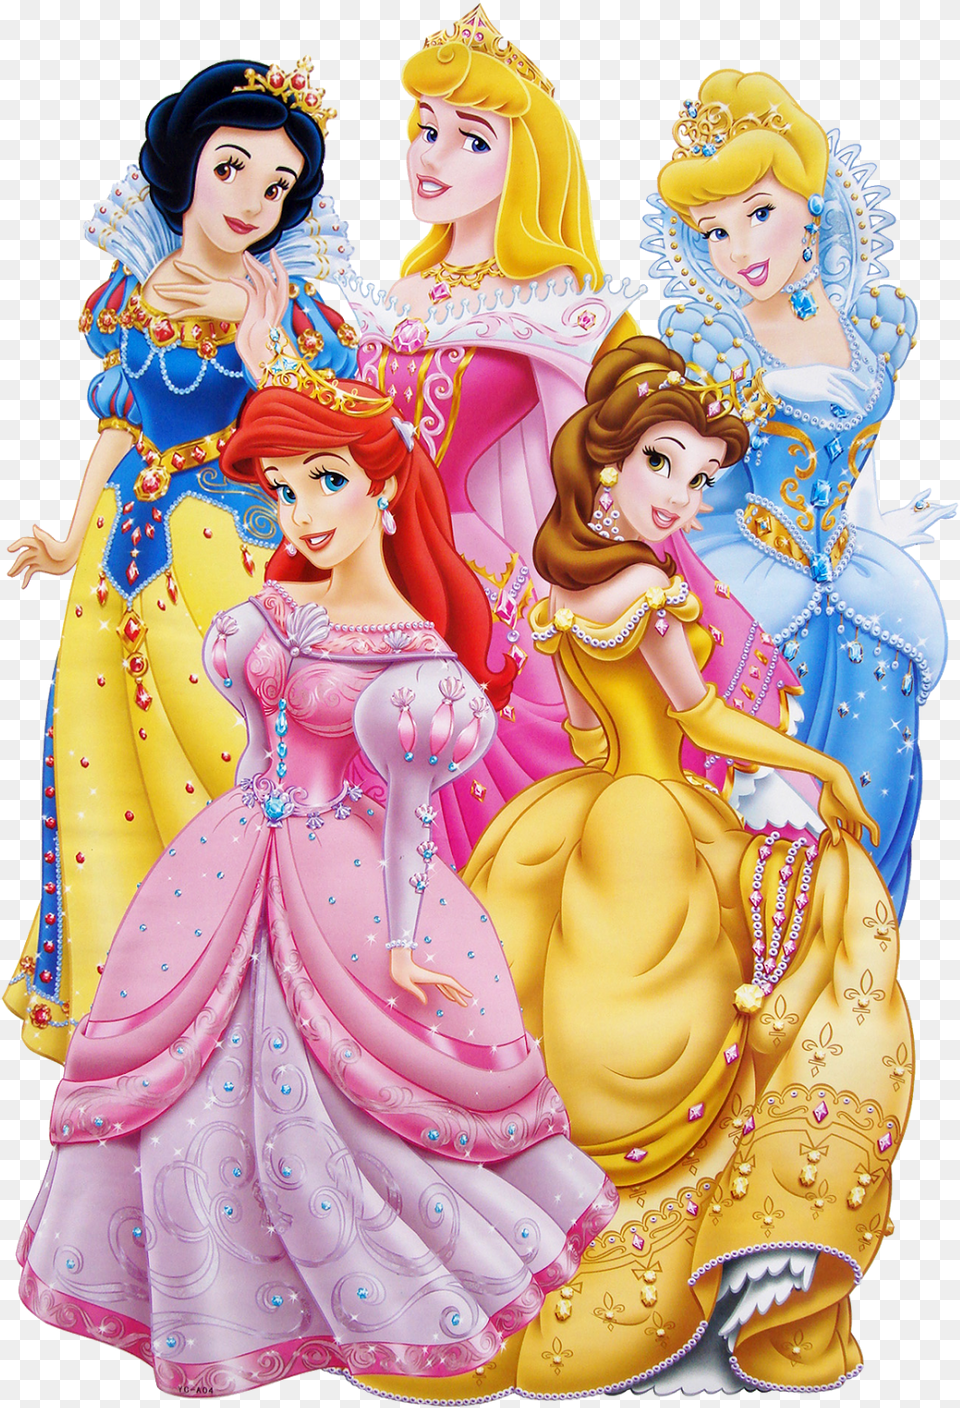 Princesas Imagenes De Las Princesas Da Disney, Figurine, Toy, Doll, Wedding Png Image